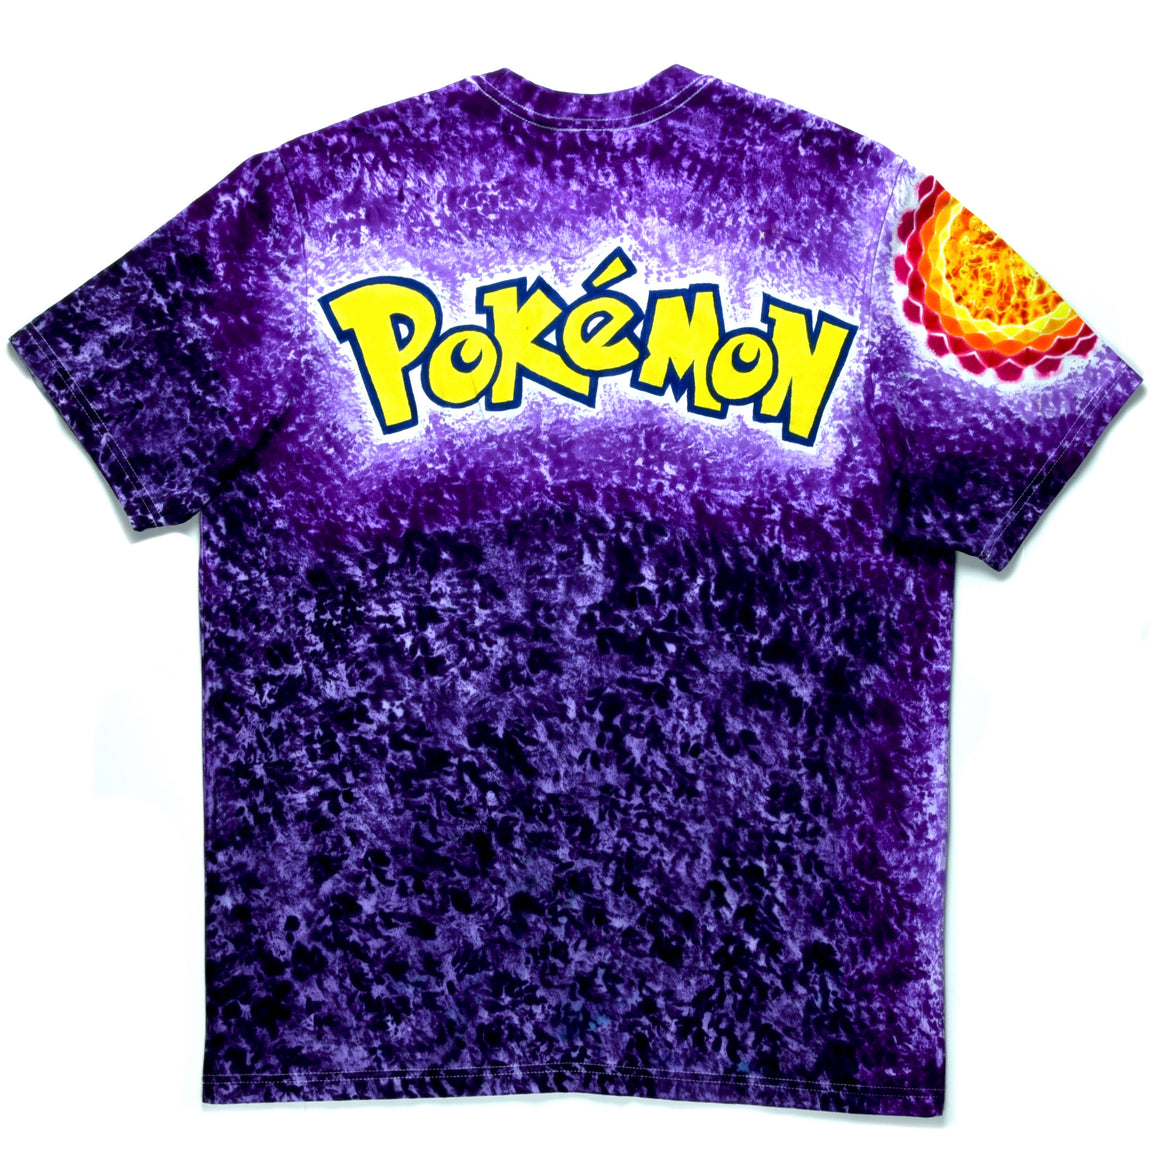 XL - Hand & Tie-dyed T-Shirt - Pokémon Charizard